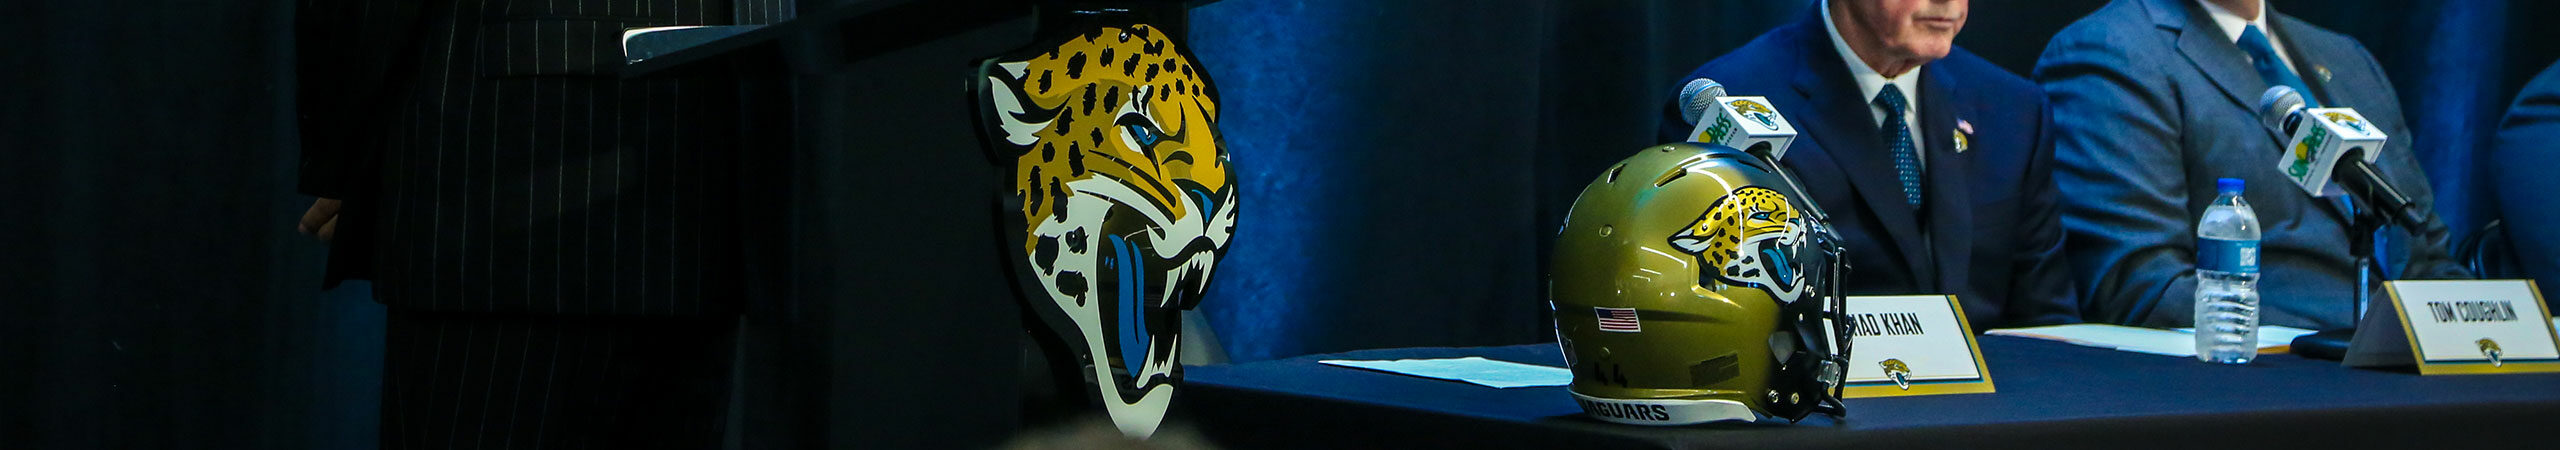 Jaguars Press Conference